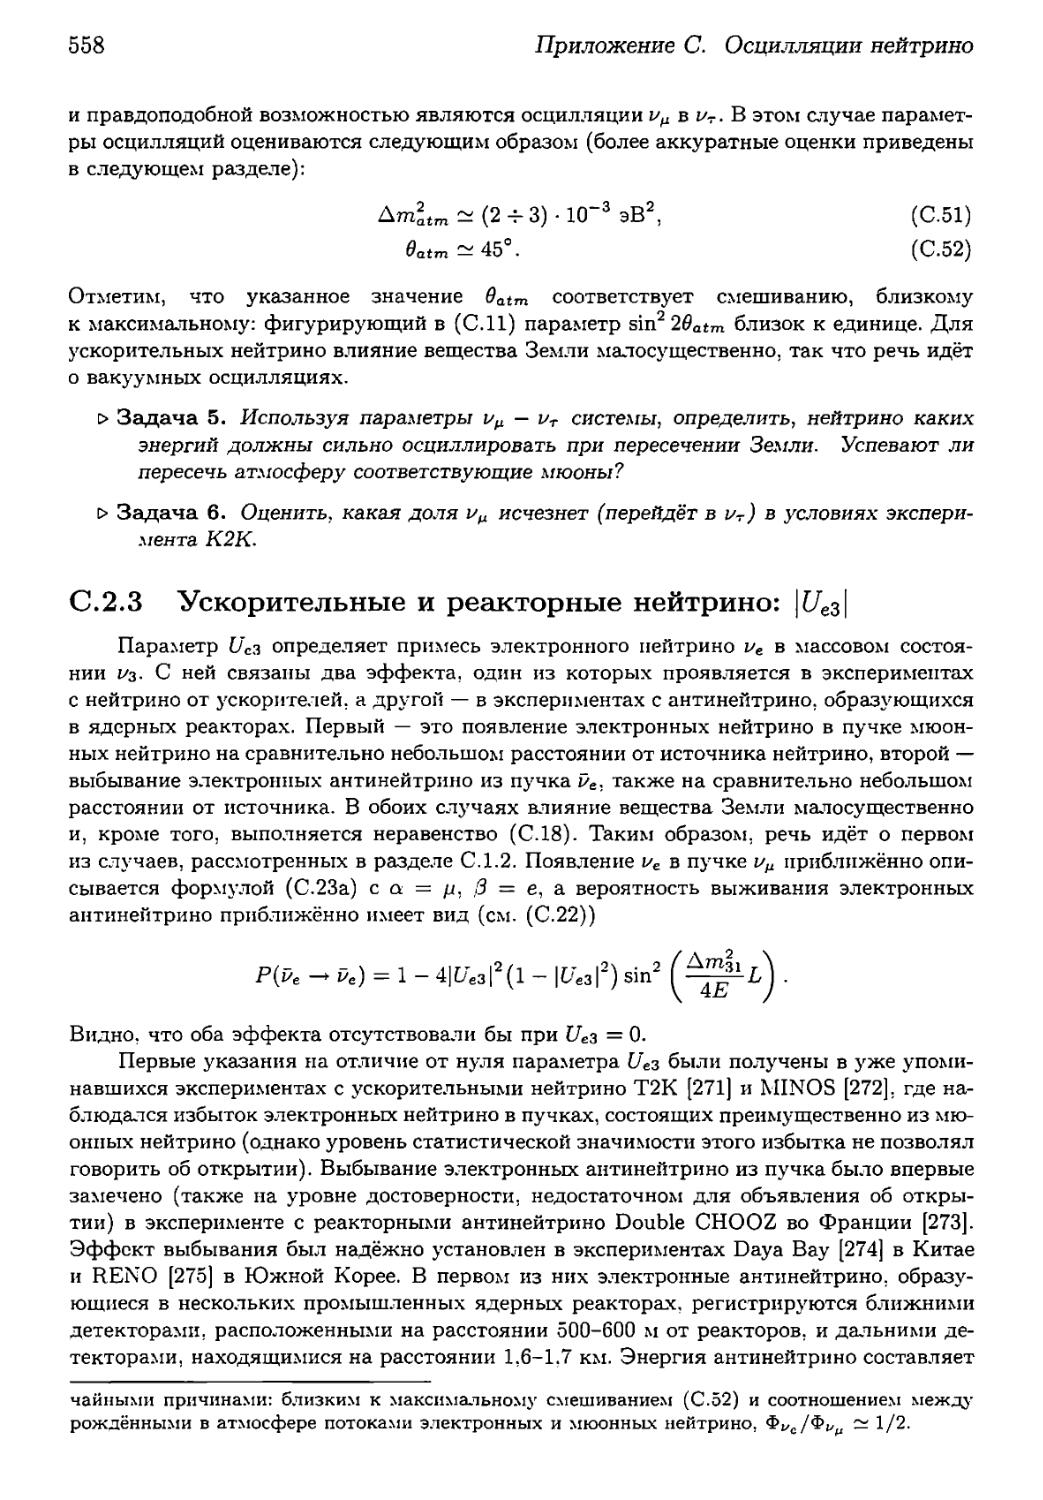 С.2.3. Ускорительные и реакторные нейтрино